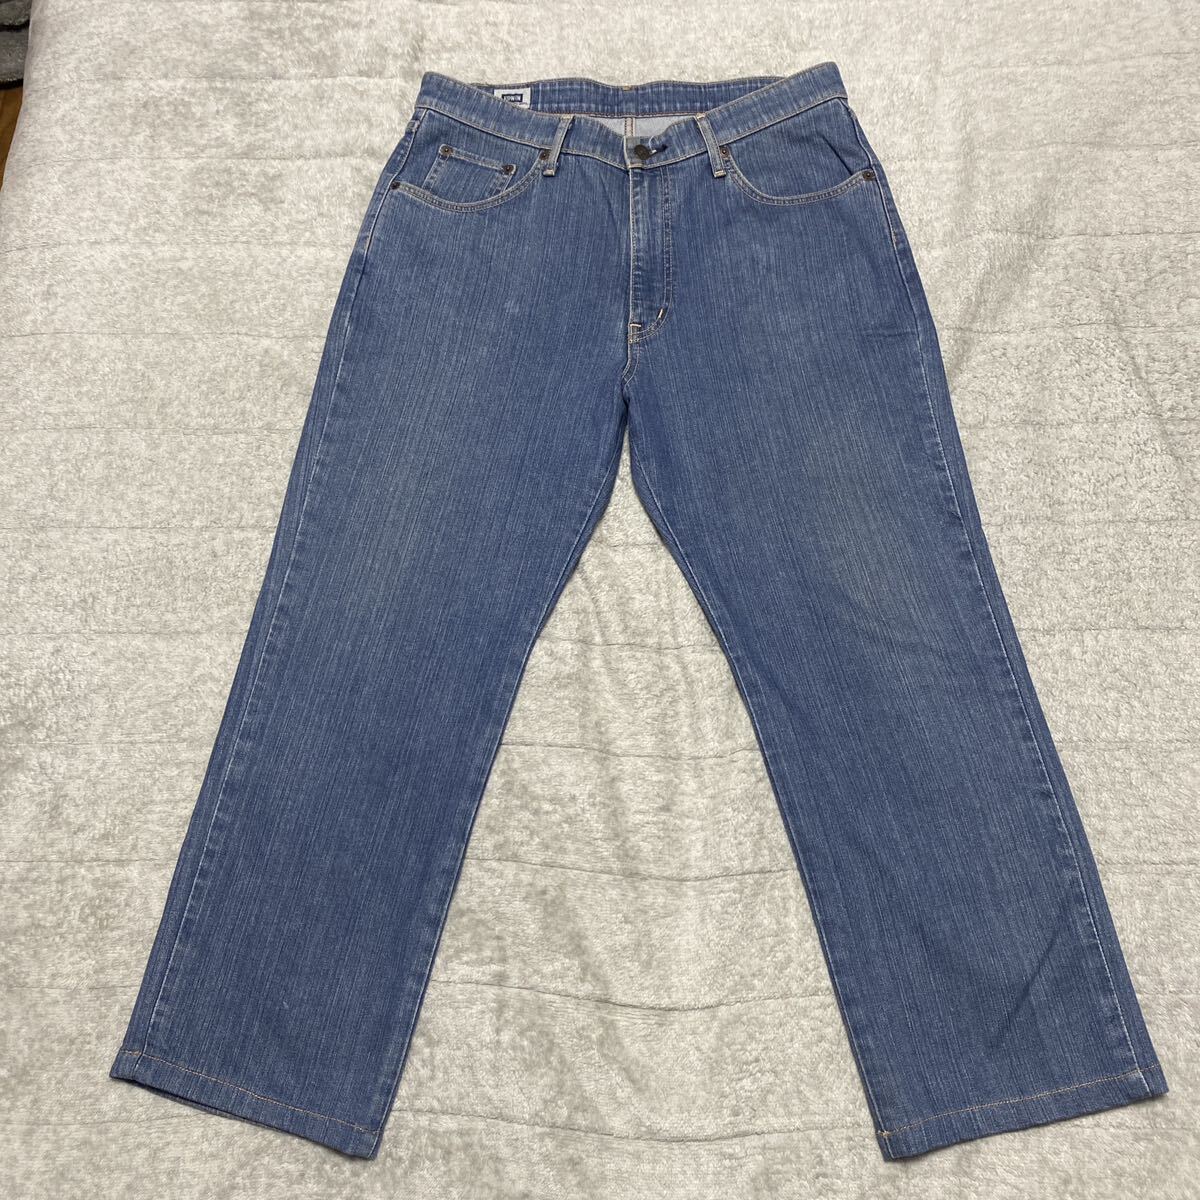 3C EDWIN Edwin S403 Denim jeans ji- bread pants 35 MADE IN JAPAN made in Japan STRAIGHT strut stretch cheap 